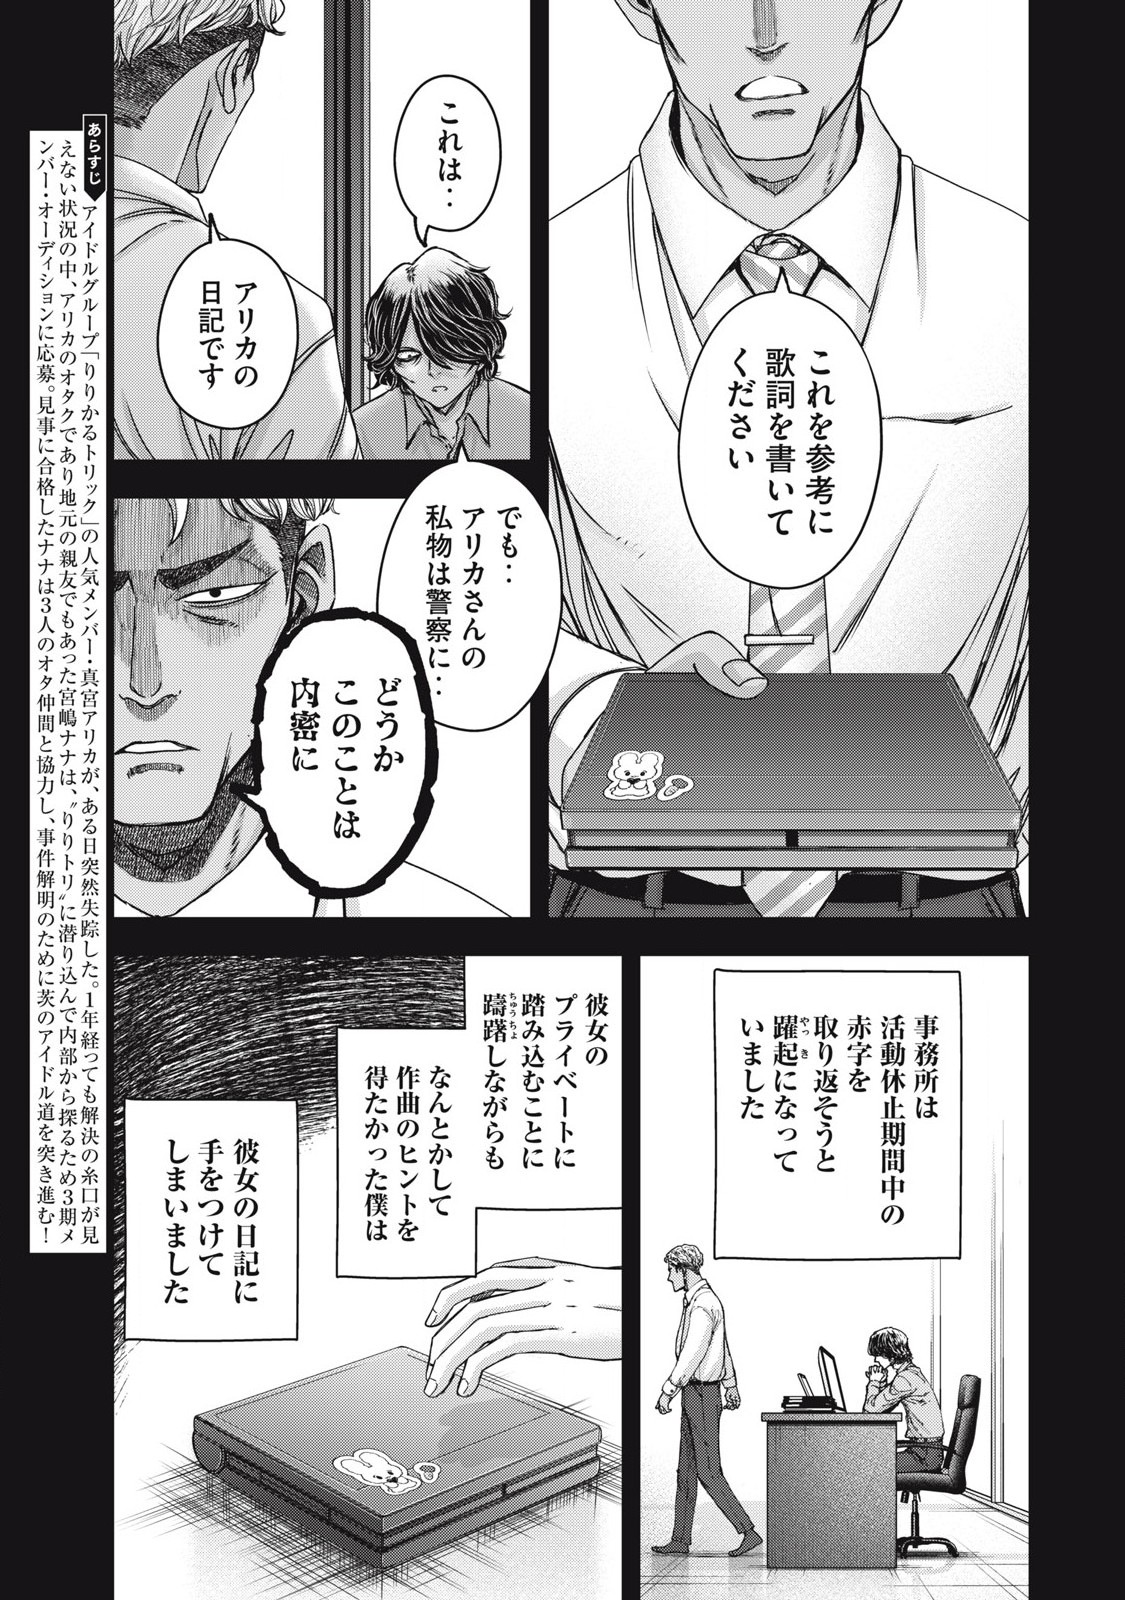 Watashi no Arika - Chapter 53 - Page 3